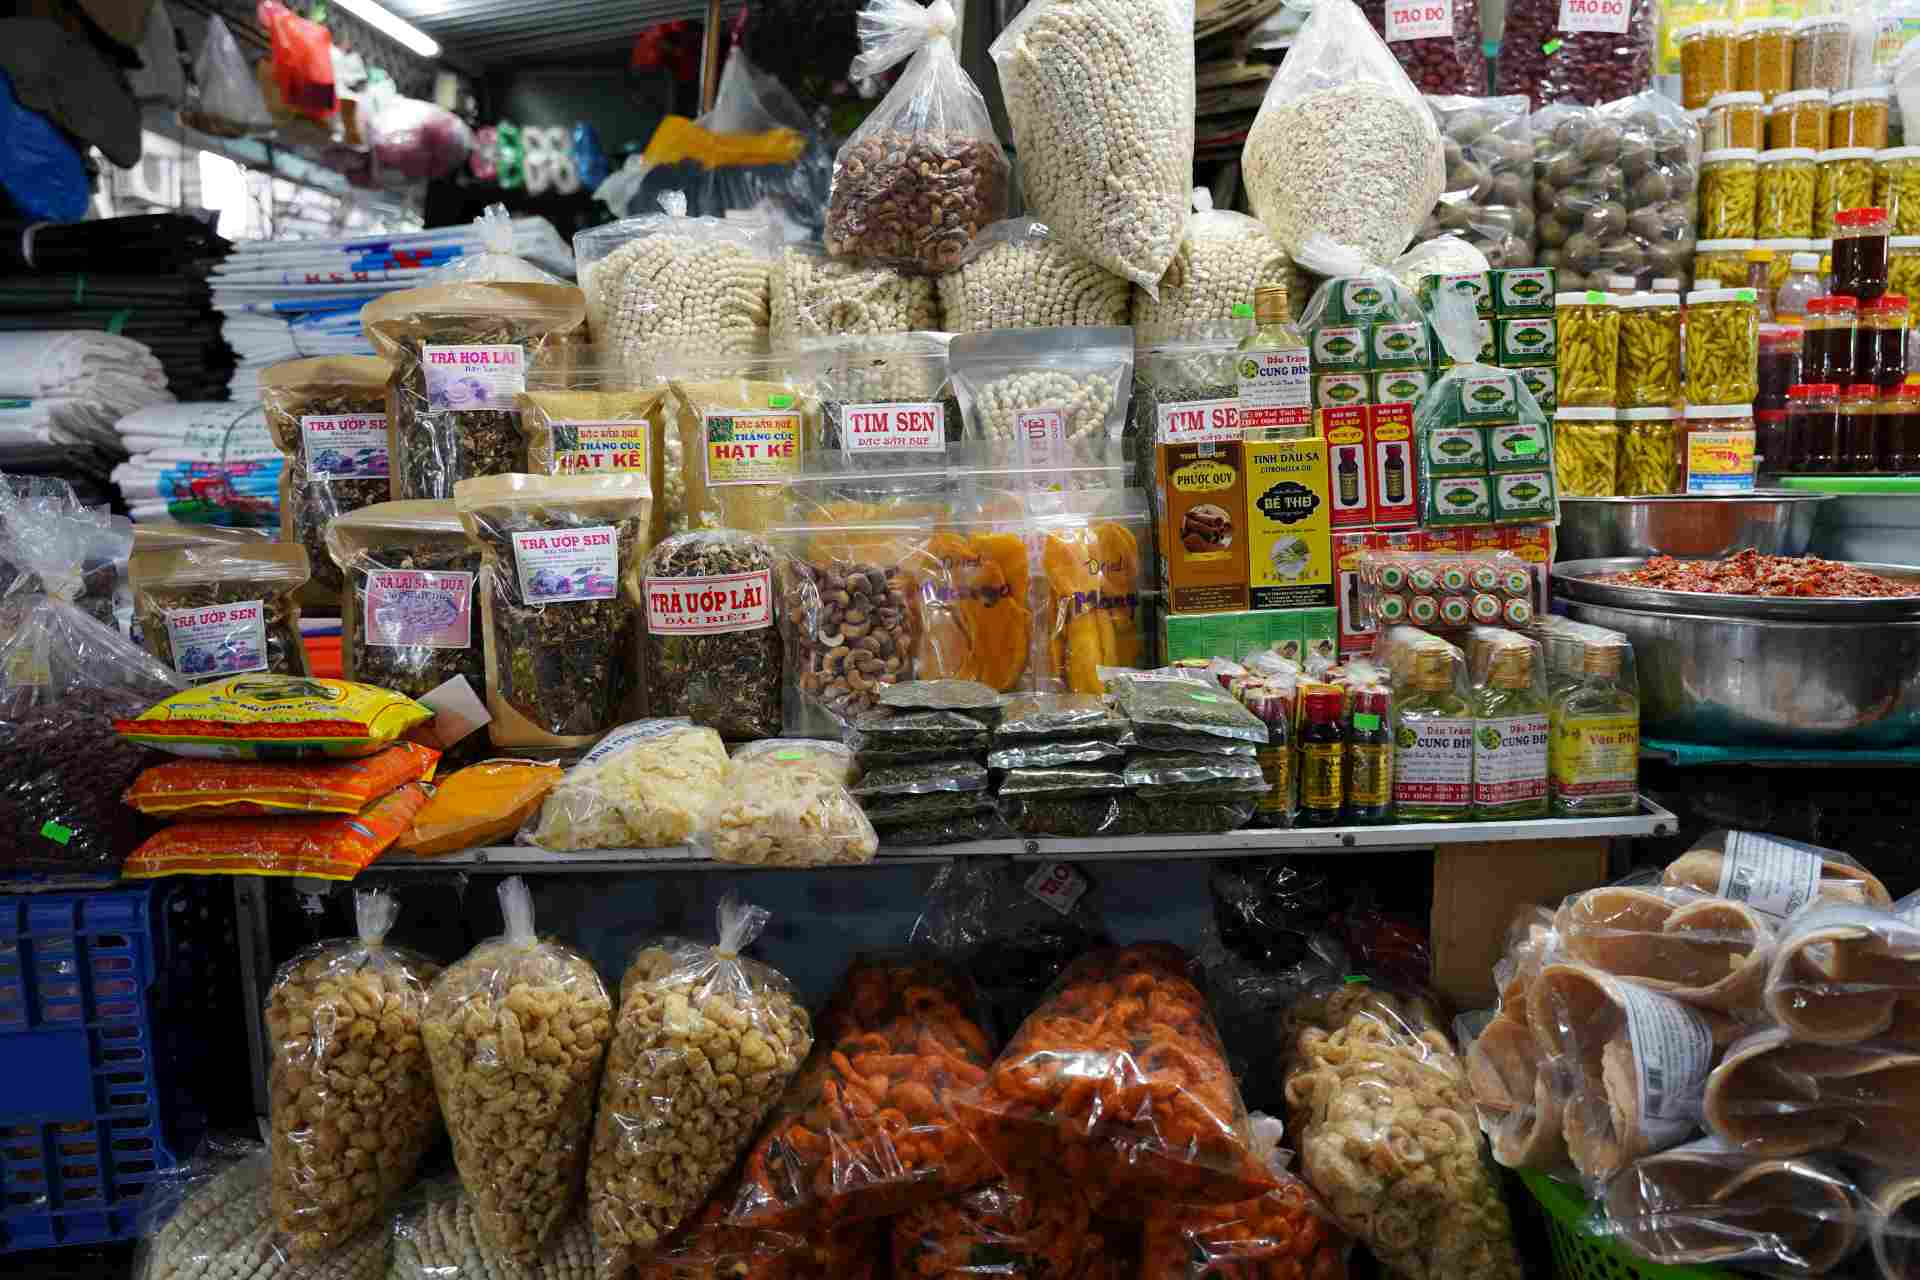 Bên cạnh sự đa dạng về ẩm thực, tại khu chợ còn quy tụ rất nhiều mặt hàng khác nhau, là sản phẩm chất lượng của các vùng miền trên toàn tỉnh Thừa Thiên Huế.